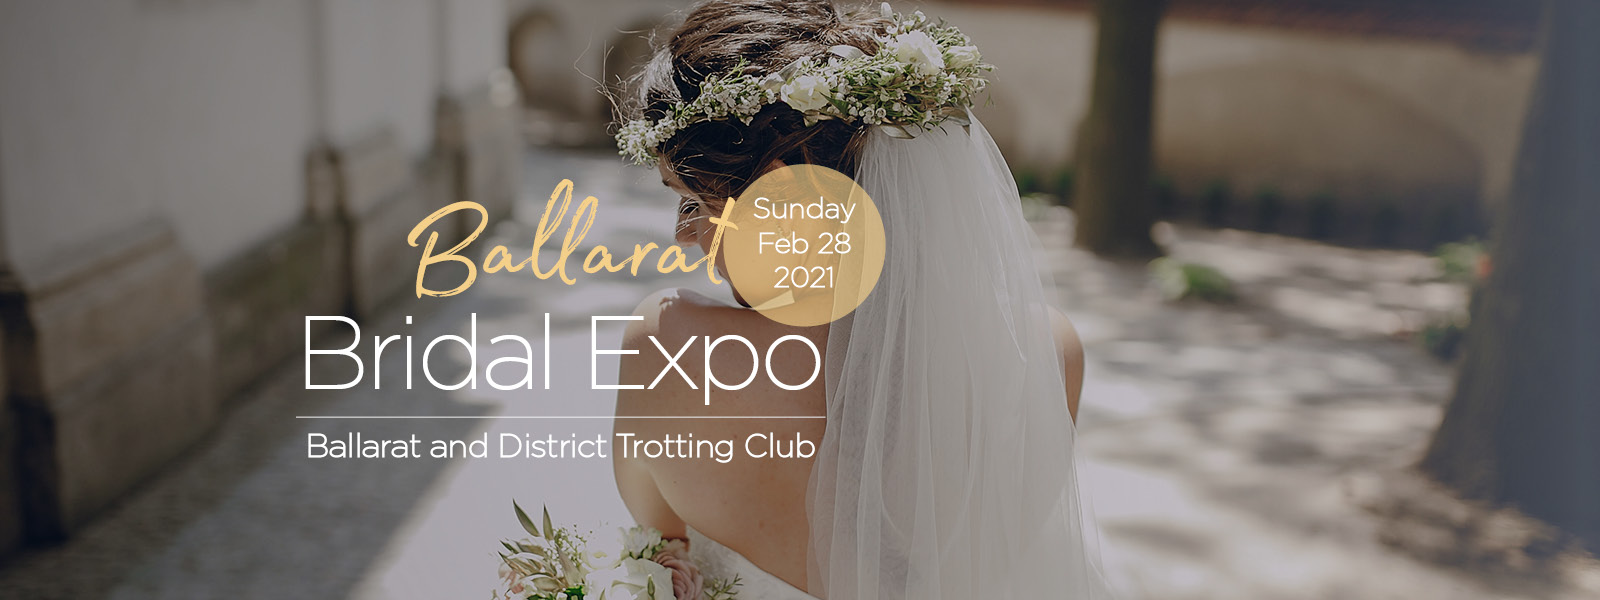 Ballarat Bridal Expo 2021